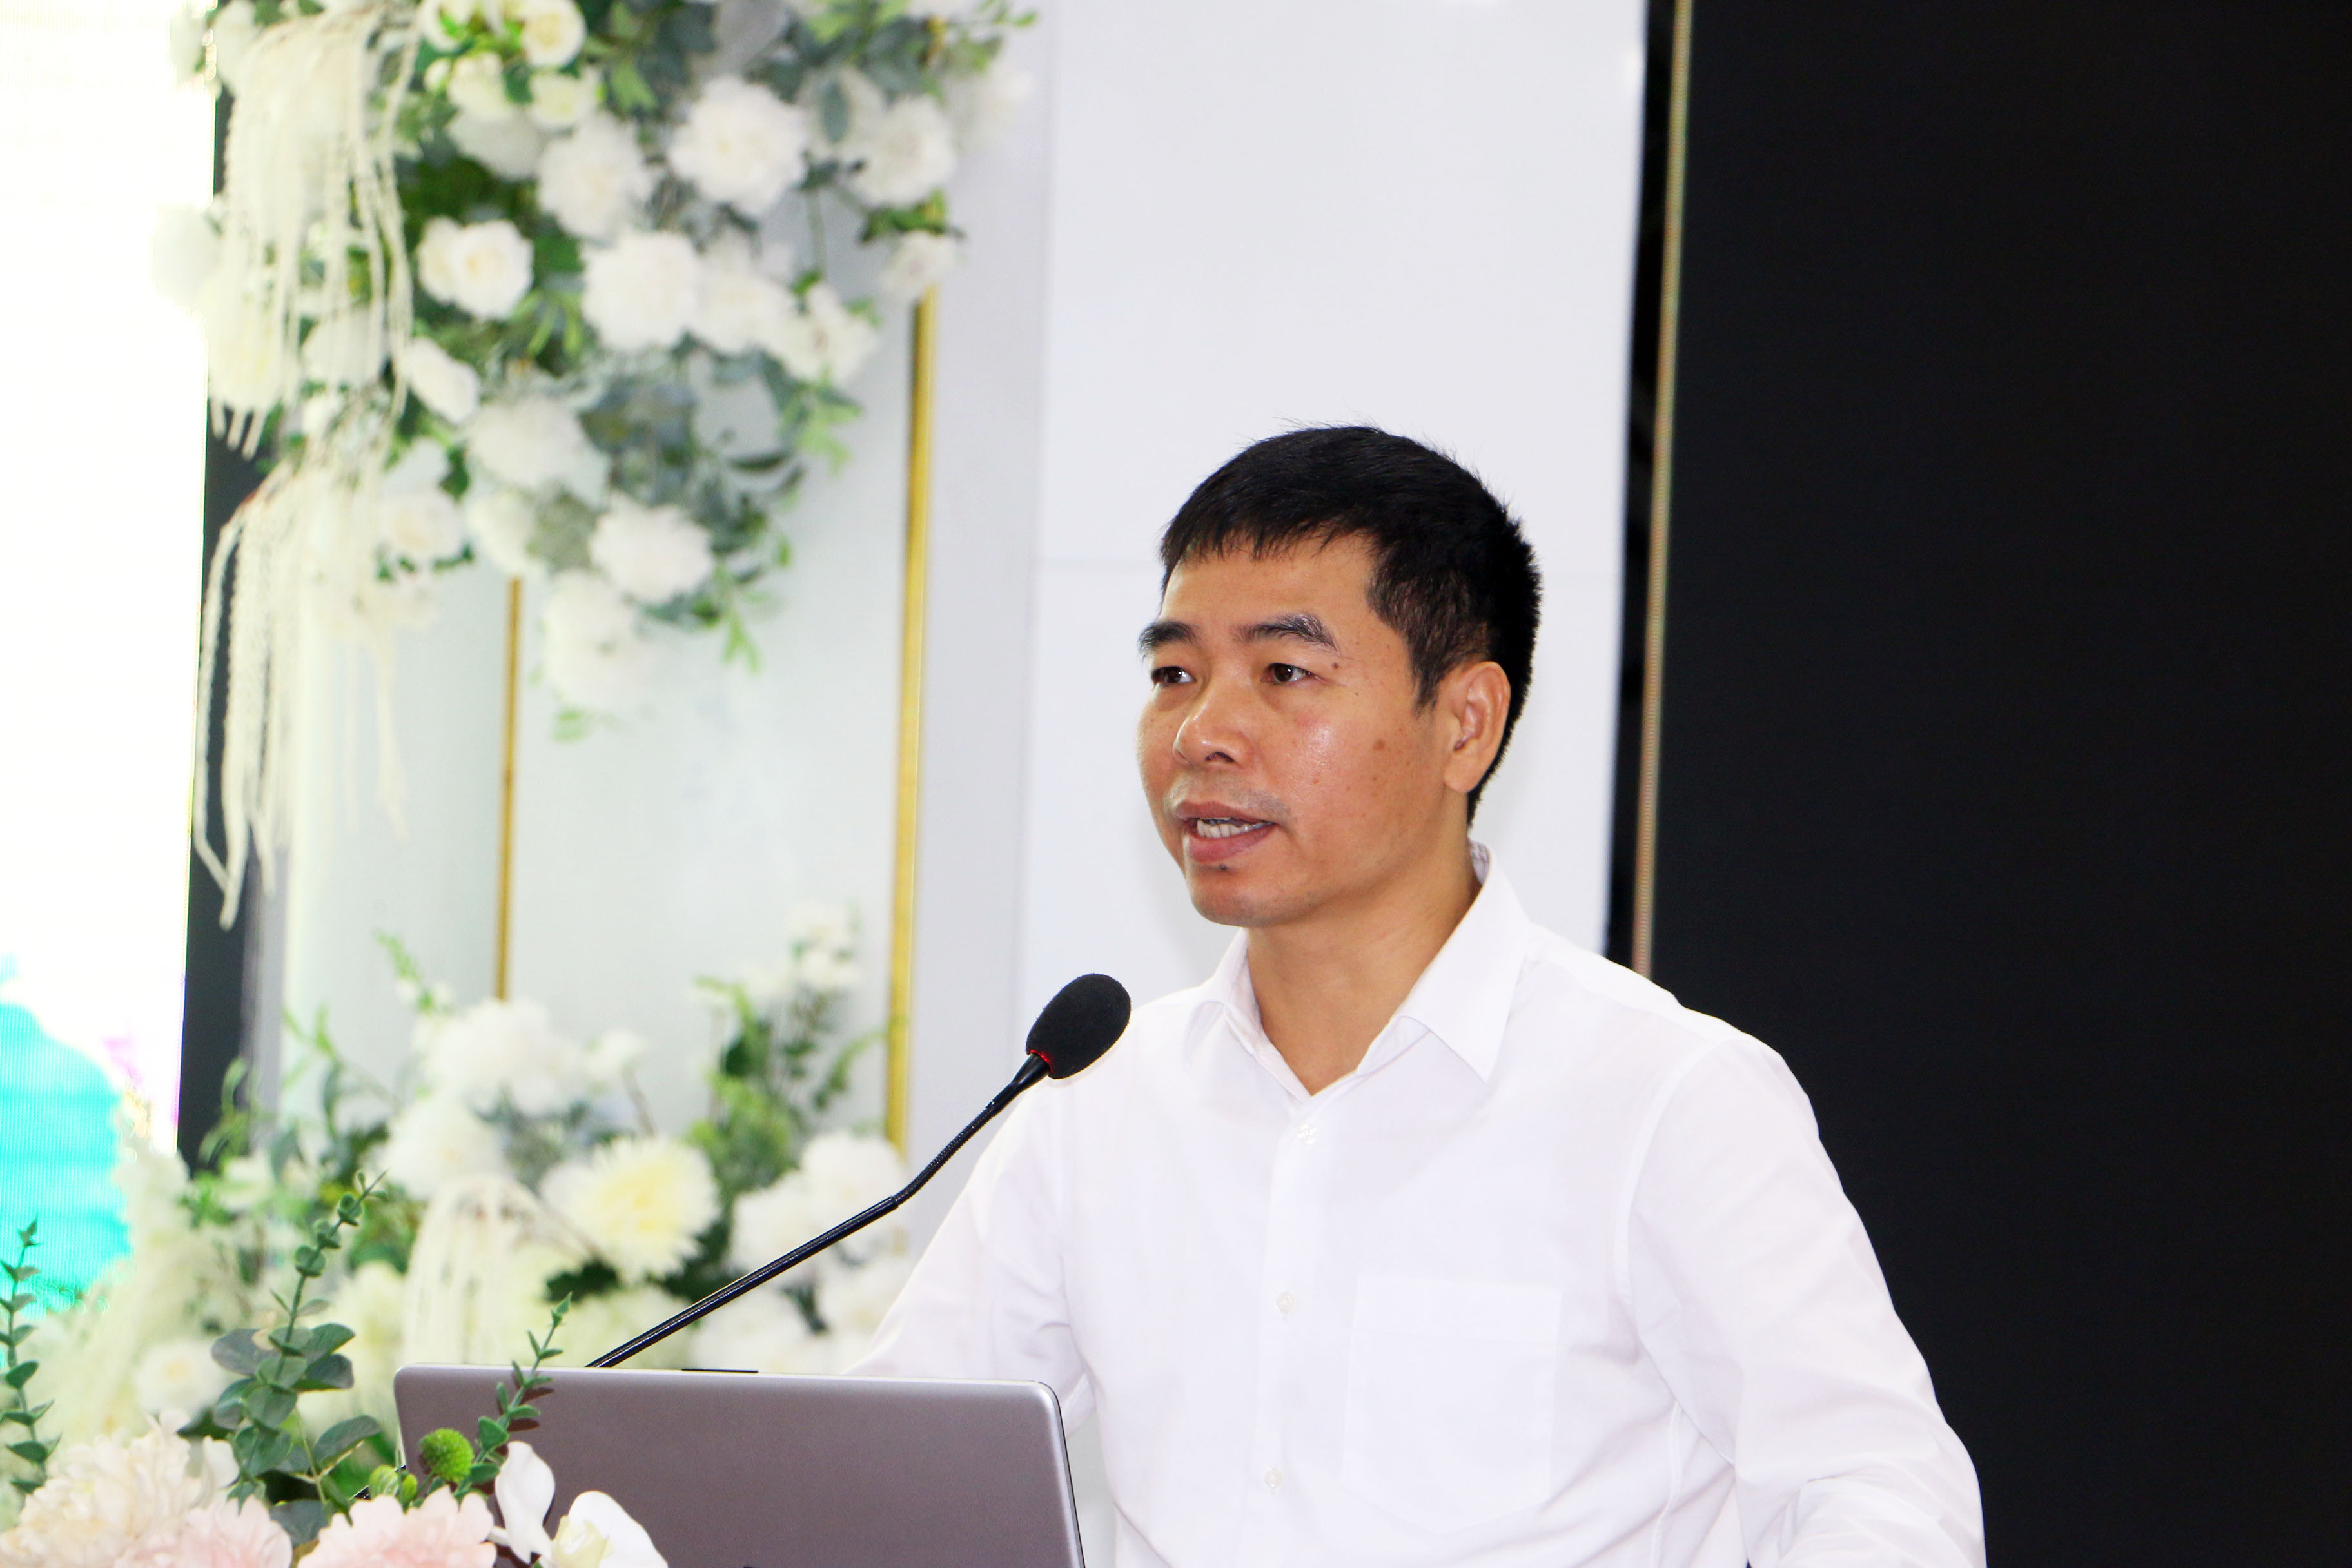 Đồng chí Nguyễn Công Hoan – Phó Giám đốc Sở Tư pháp phát biểu khai mạc tại Hội nghị. Ảnh: An Quỳnh.